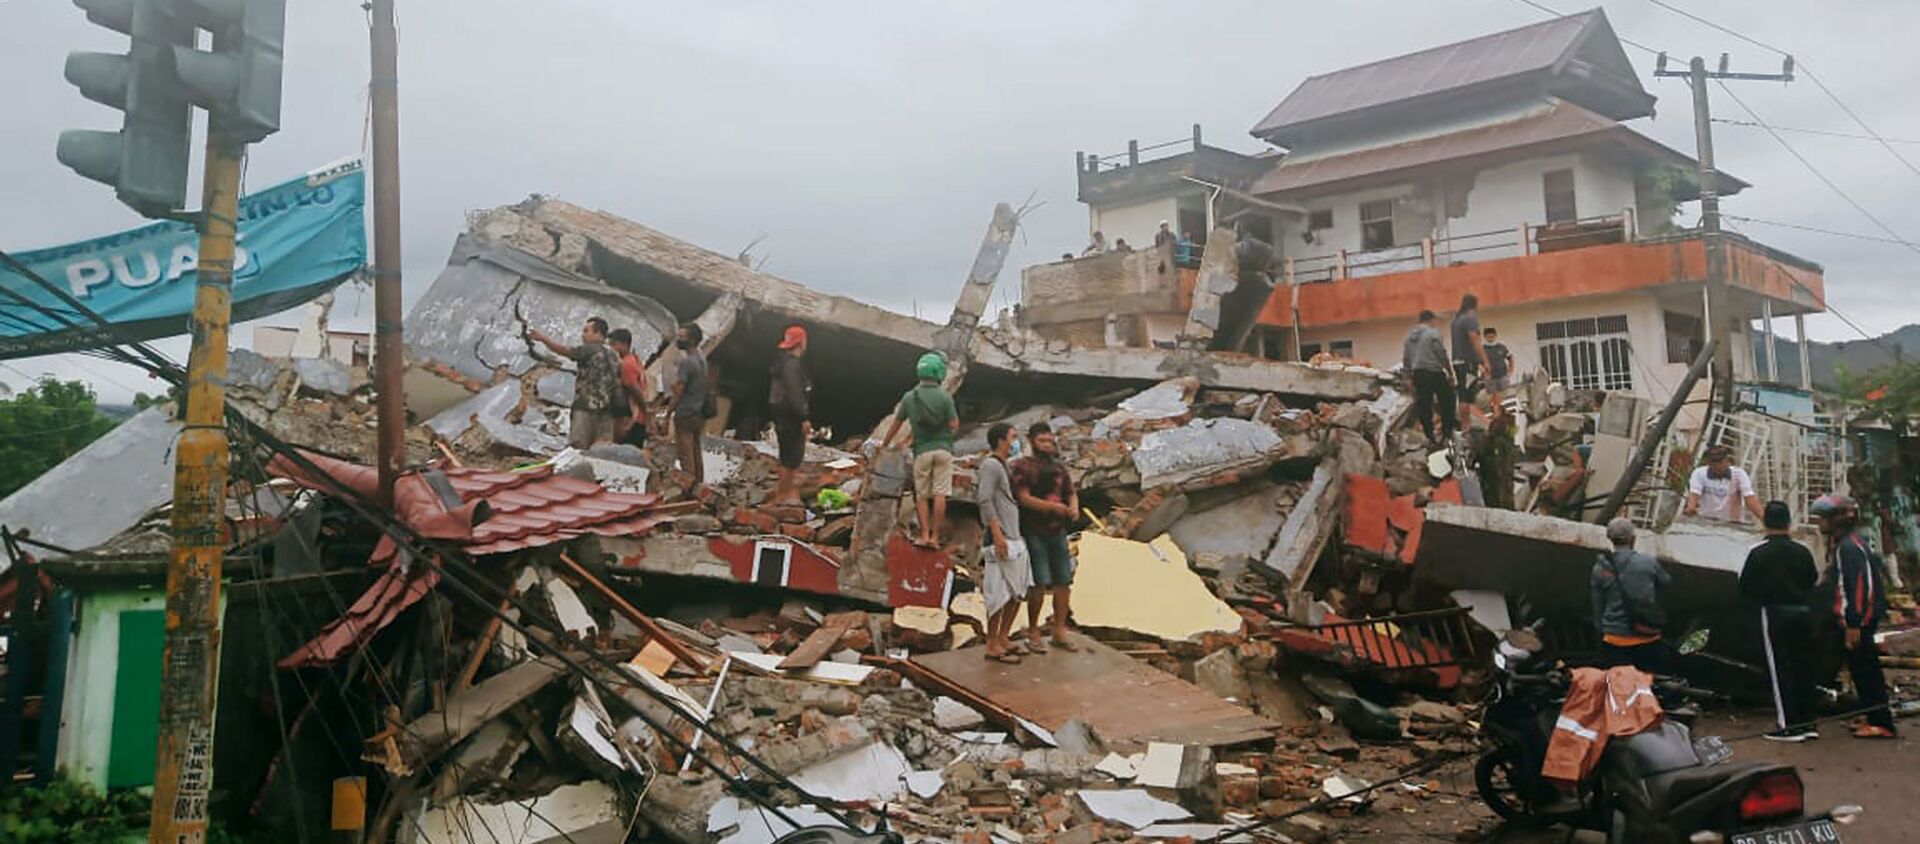 Спасатели ищут выживших после землетрясения в городе Мамаджу, Индонезия - Sputnik Таджикистан, 1920, 15.01.2021